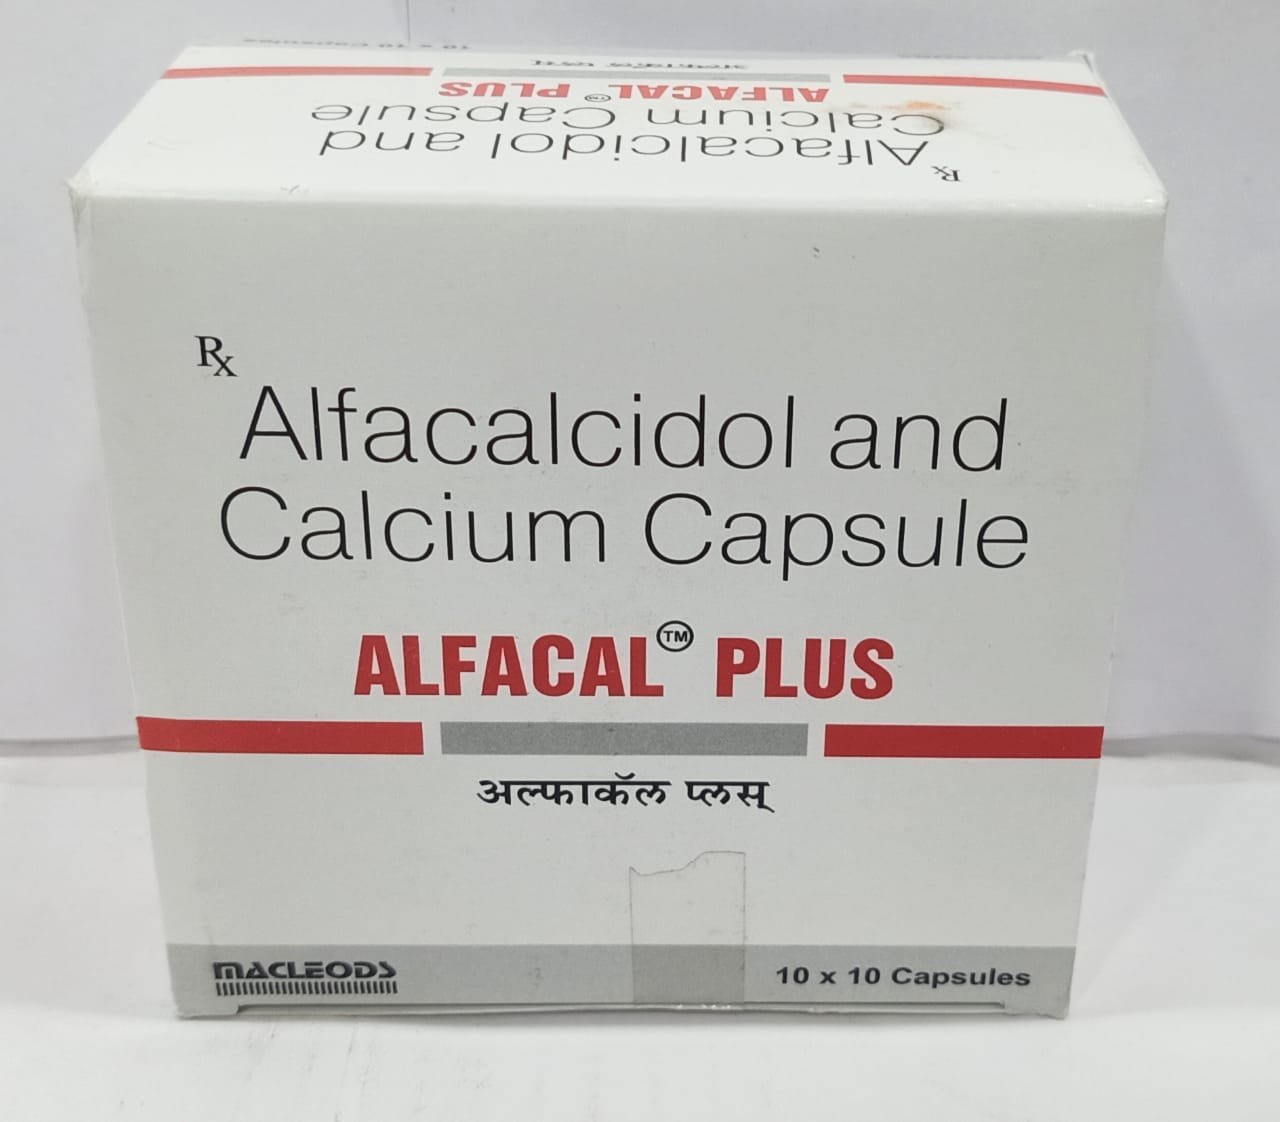 Alfacalcidol and Calcium Carbonate Capsule